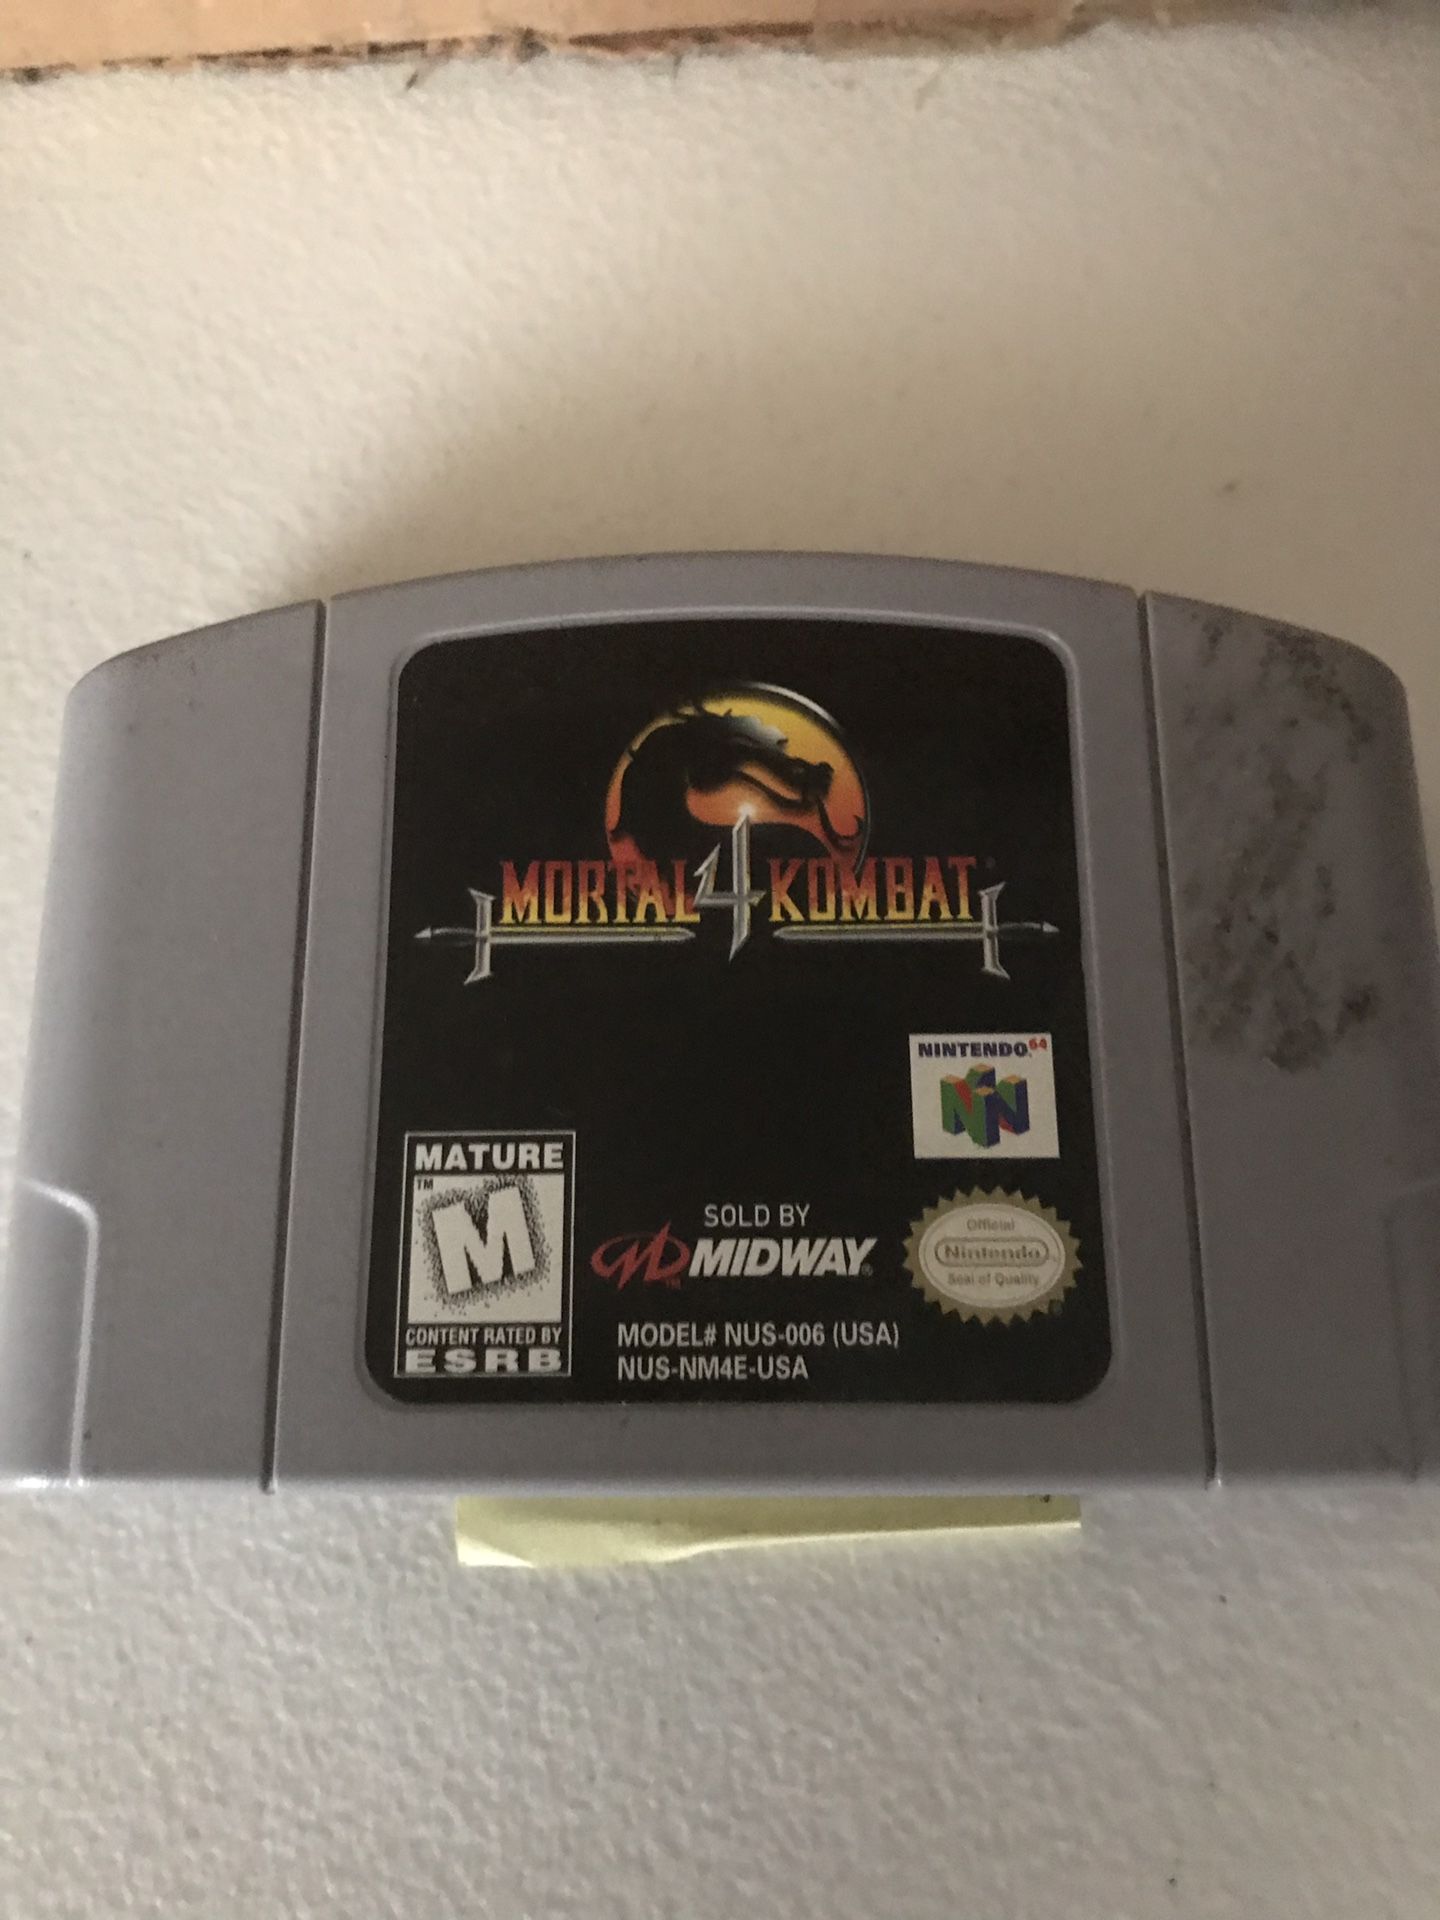 Mortal kombat 4 Nintendo 64 game